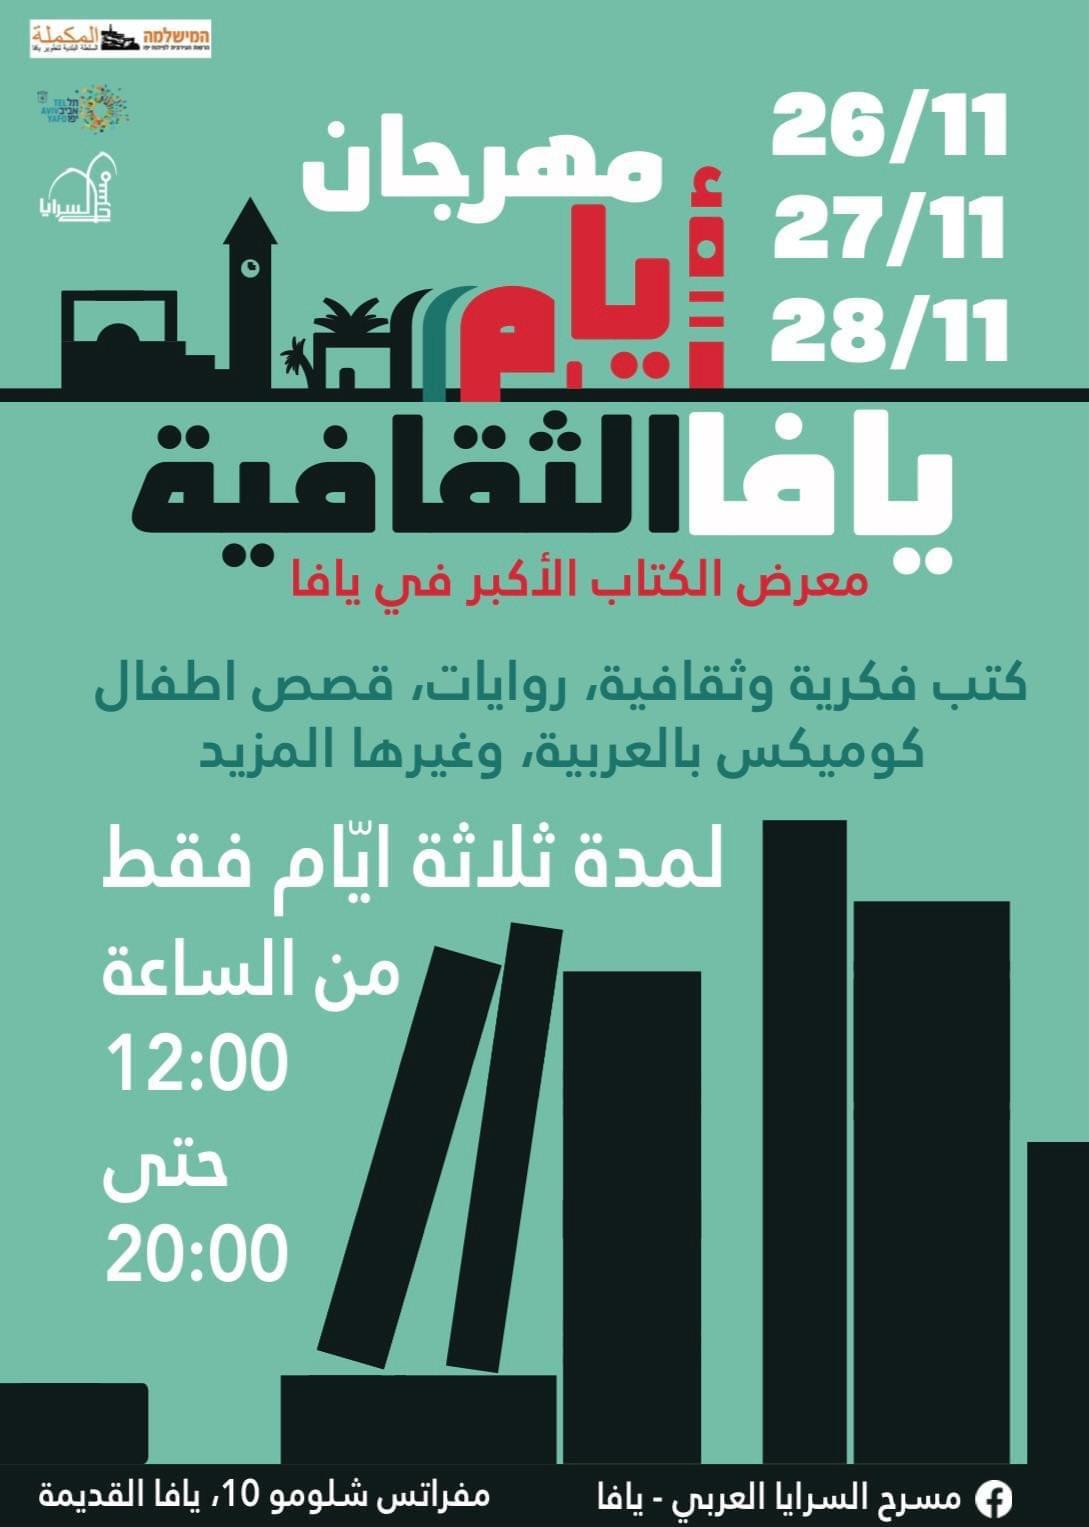  اليوم: انطلاق مهرجان أيام يافا الثقافية الأول 